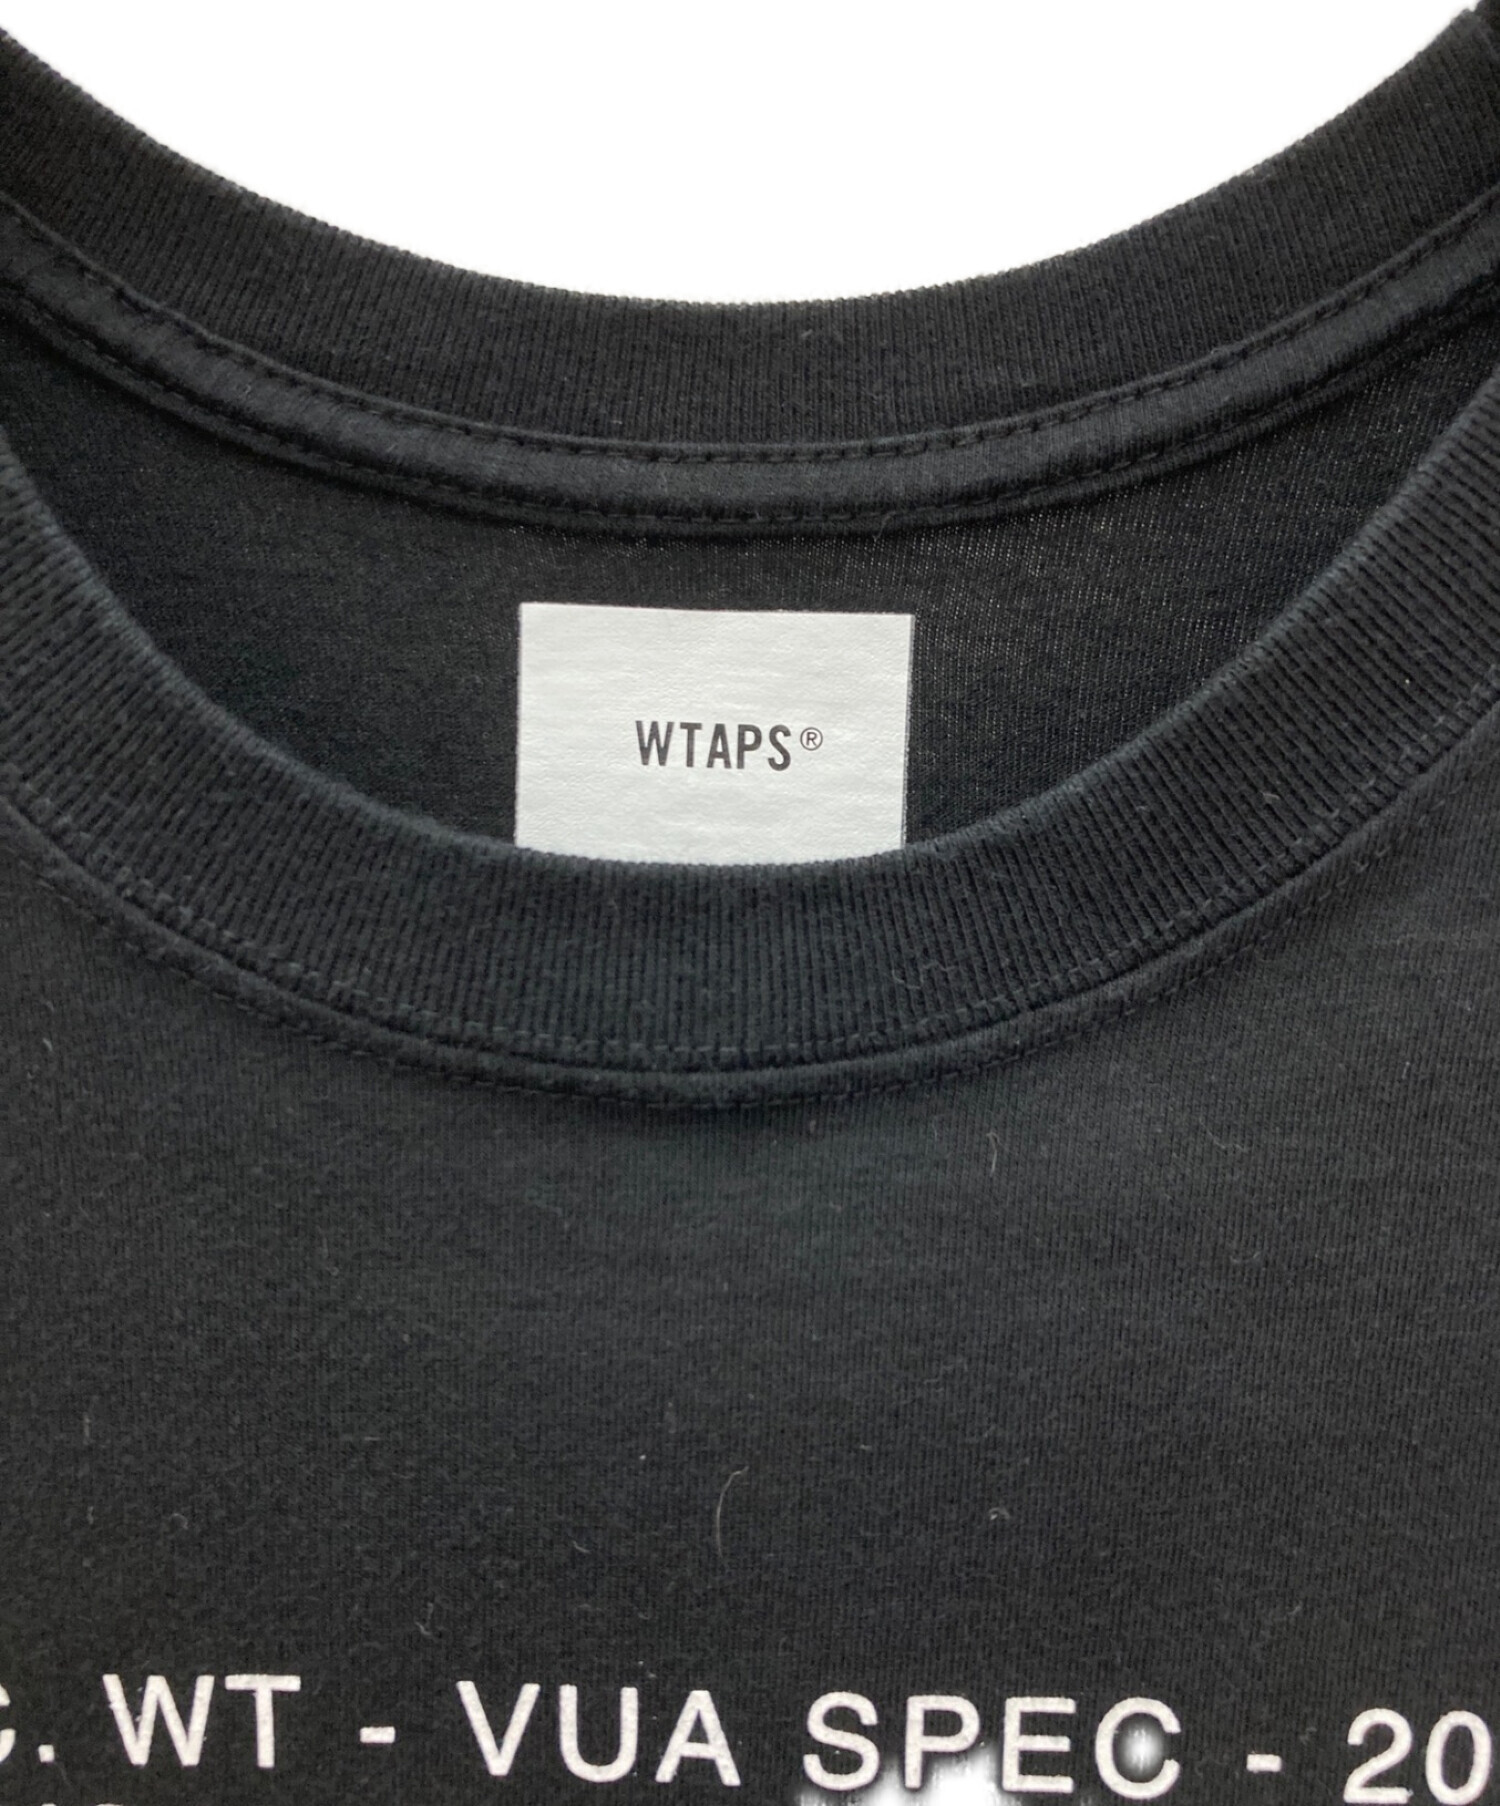 中古・古着通販】WTAPS (ダブルタップス) プリントTシャツ ブラック